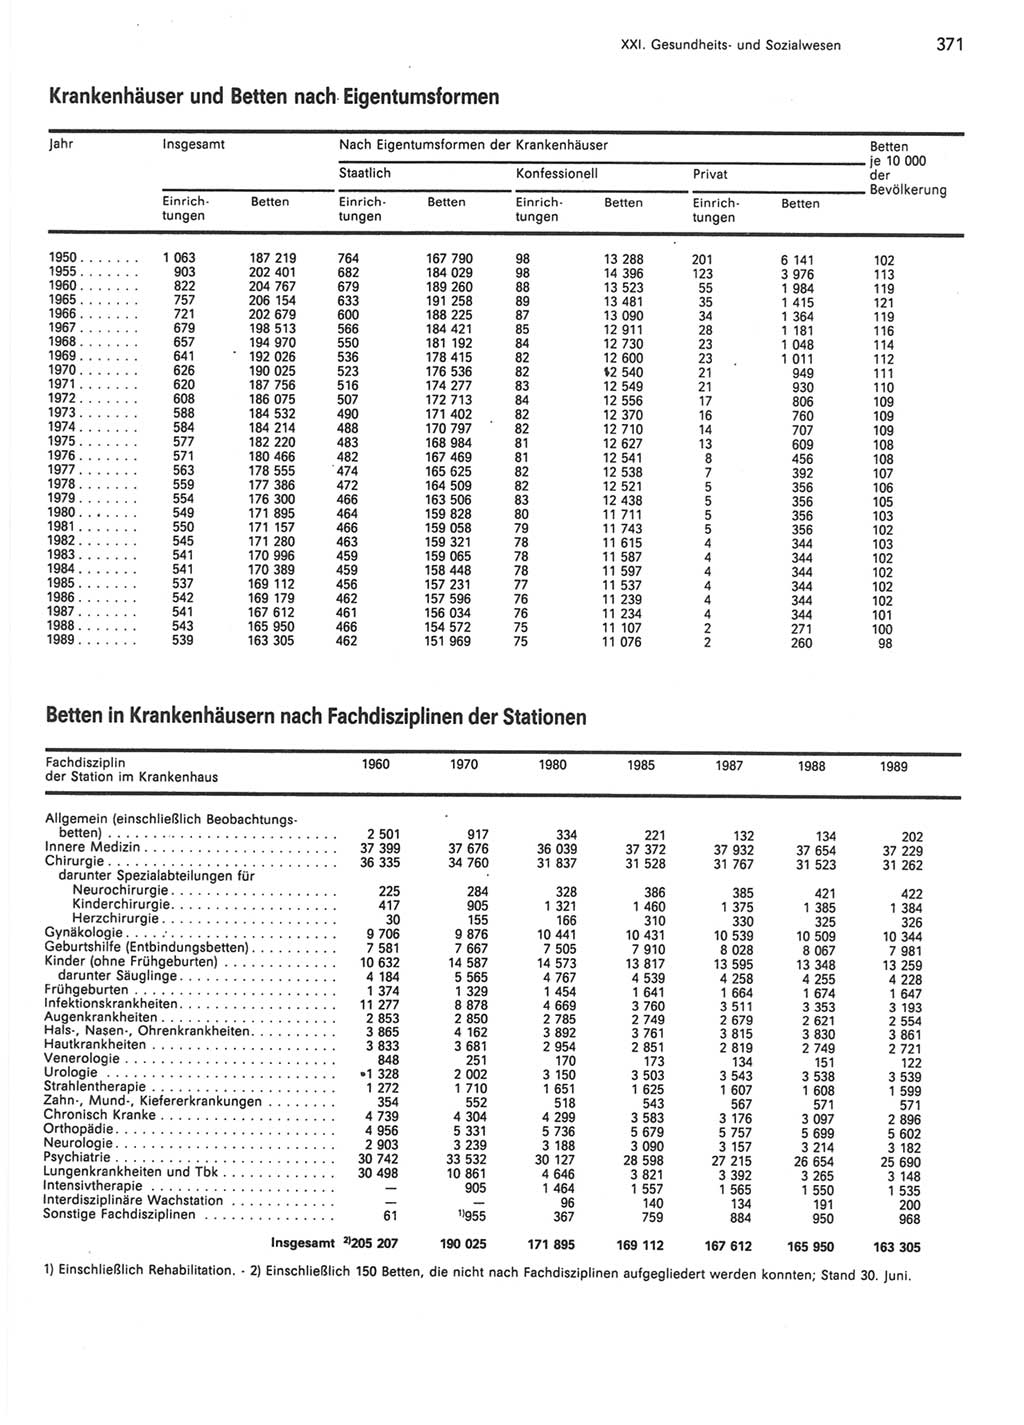 Statistisches Jahrbuch der Deutschen Demokratischen Republik (DDR) 1990, Seite 371 (Stat. Jb. DDR 1990, S. 371)